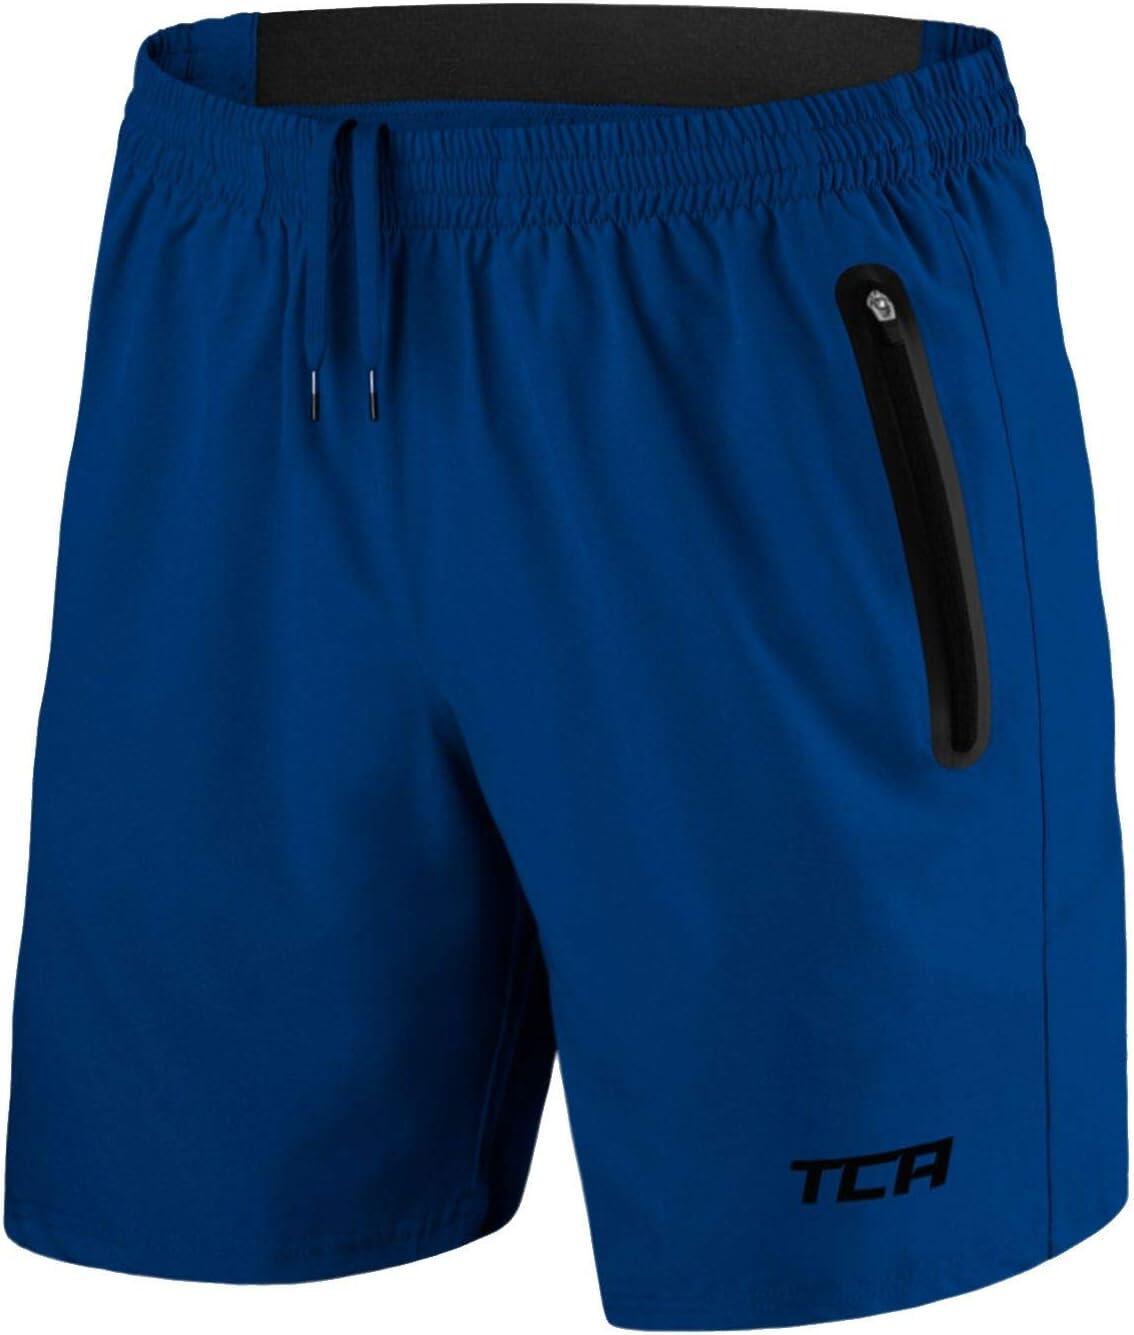 Men's Elite Tech Lightweight Running Shorts with Zip Pockets - Mazarine Blue 1/6